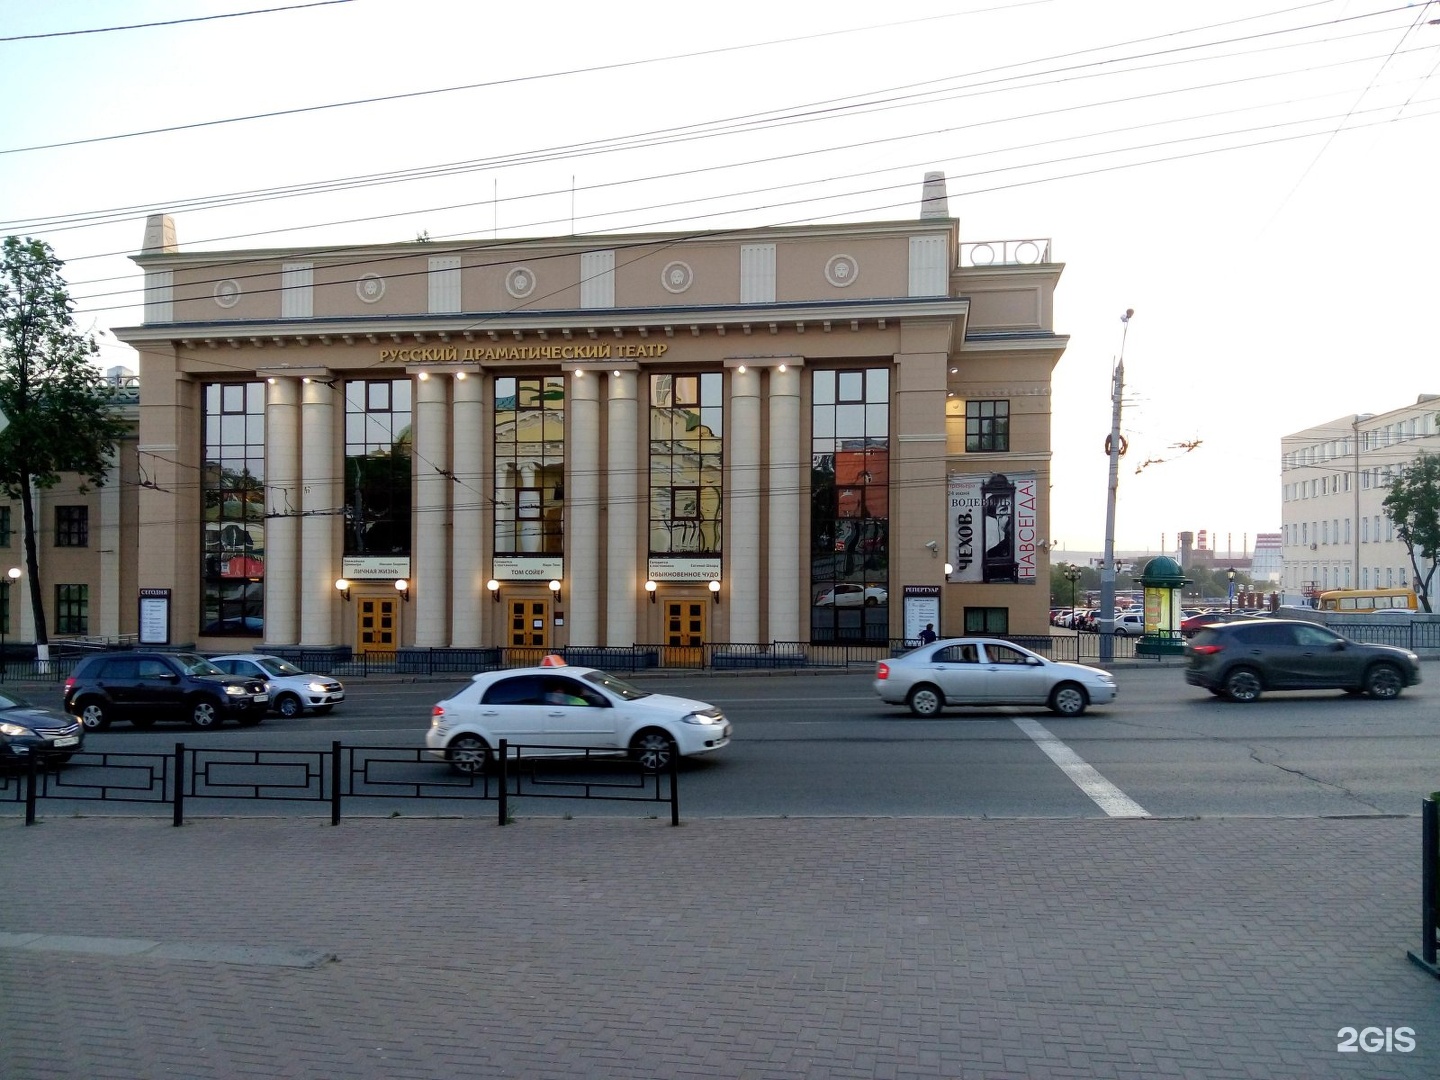 Удмуртский государственный театр ижевск